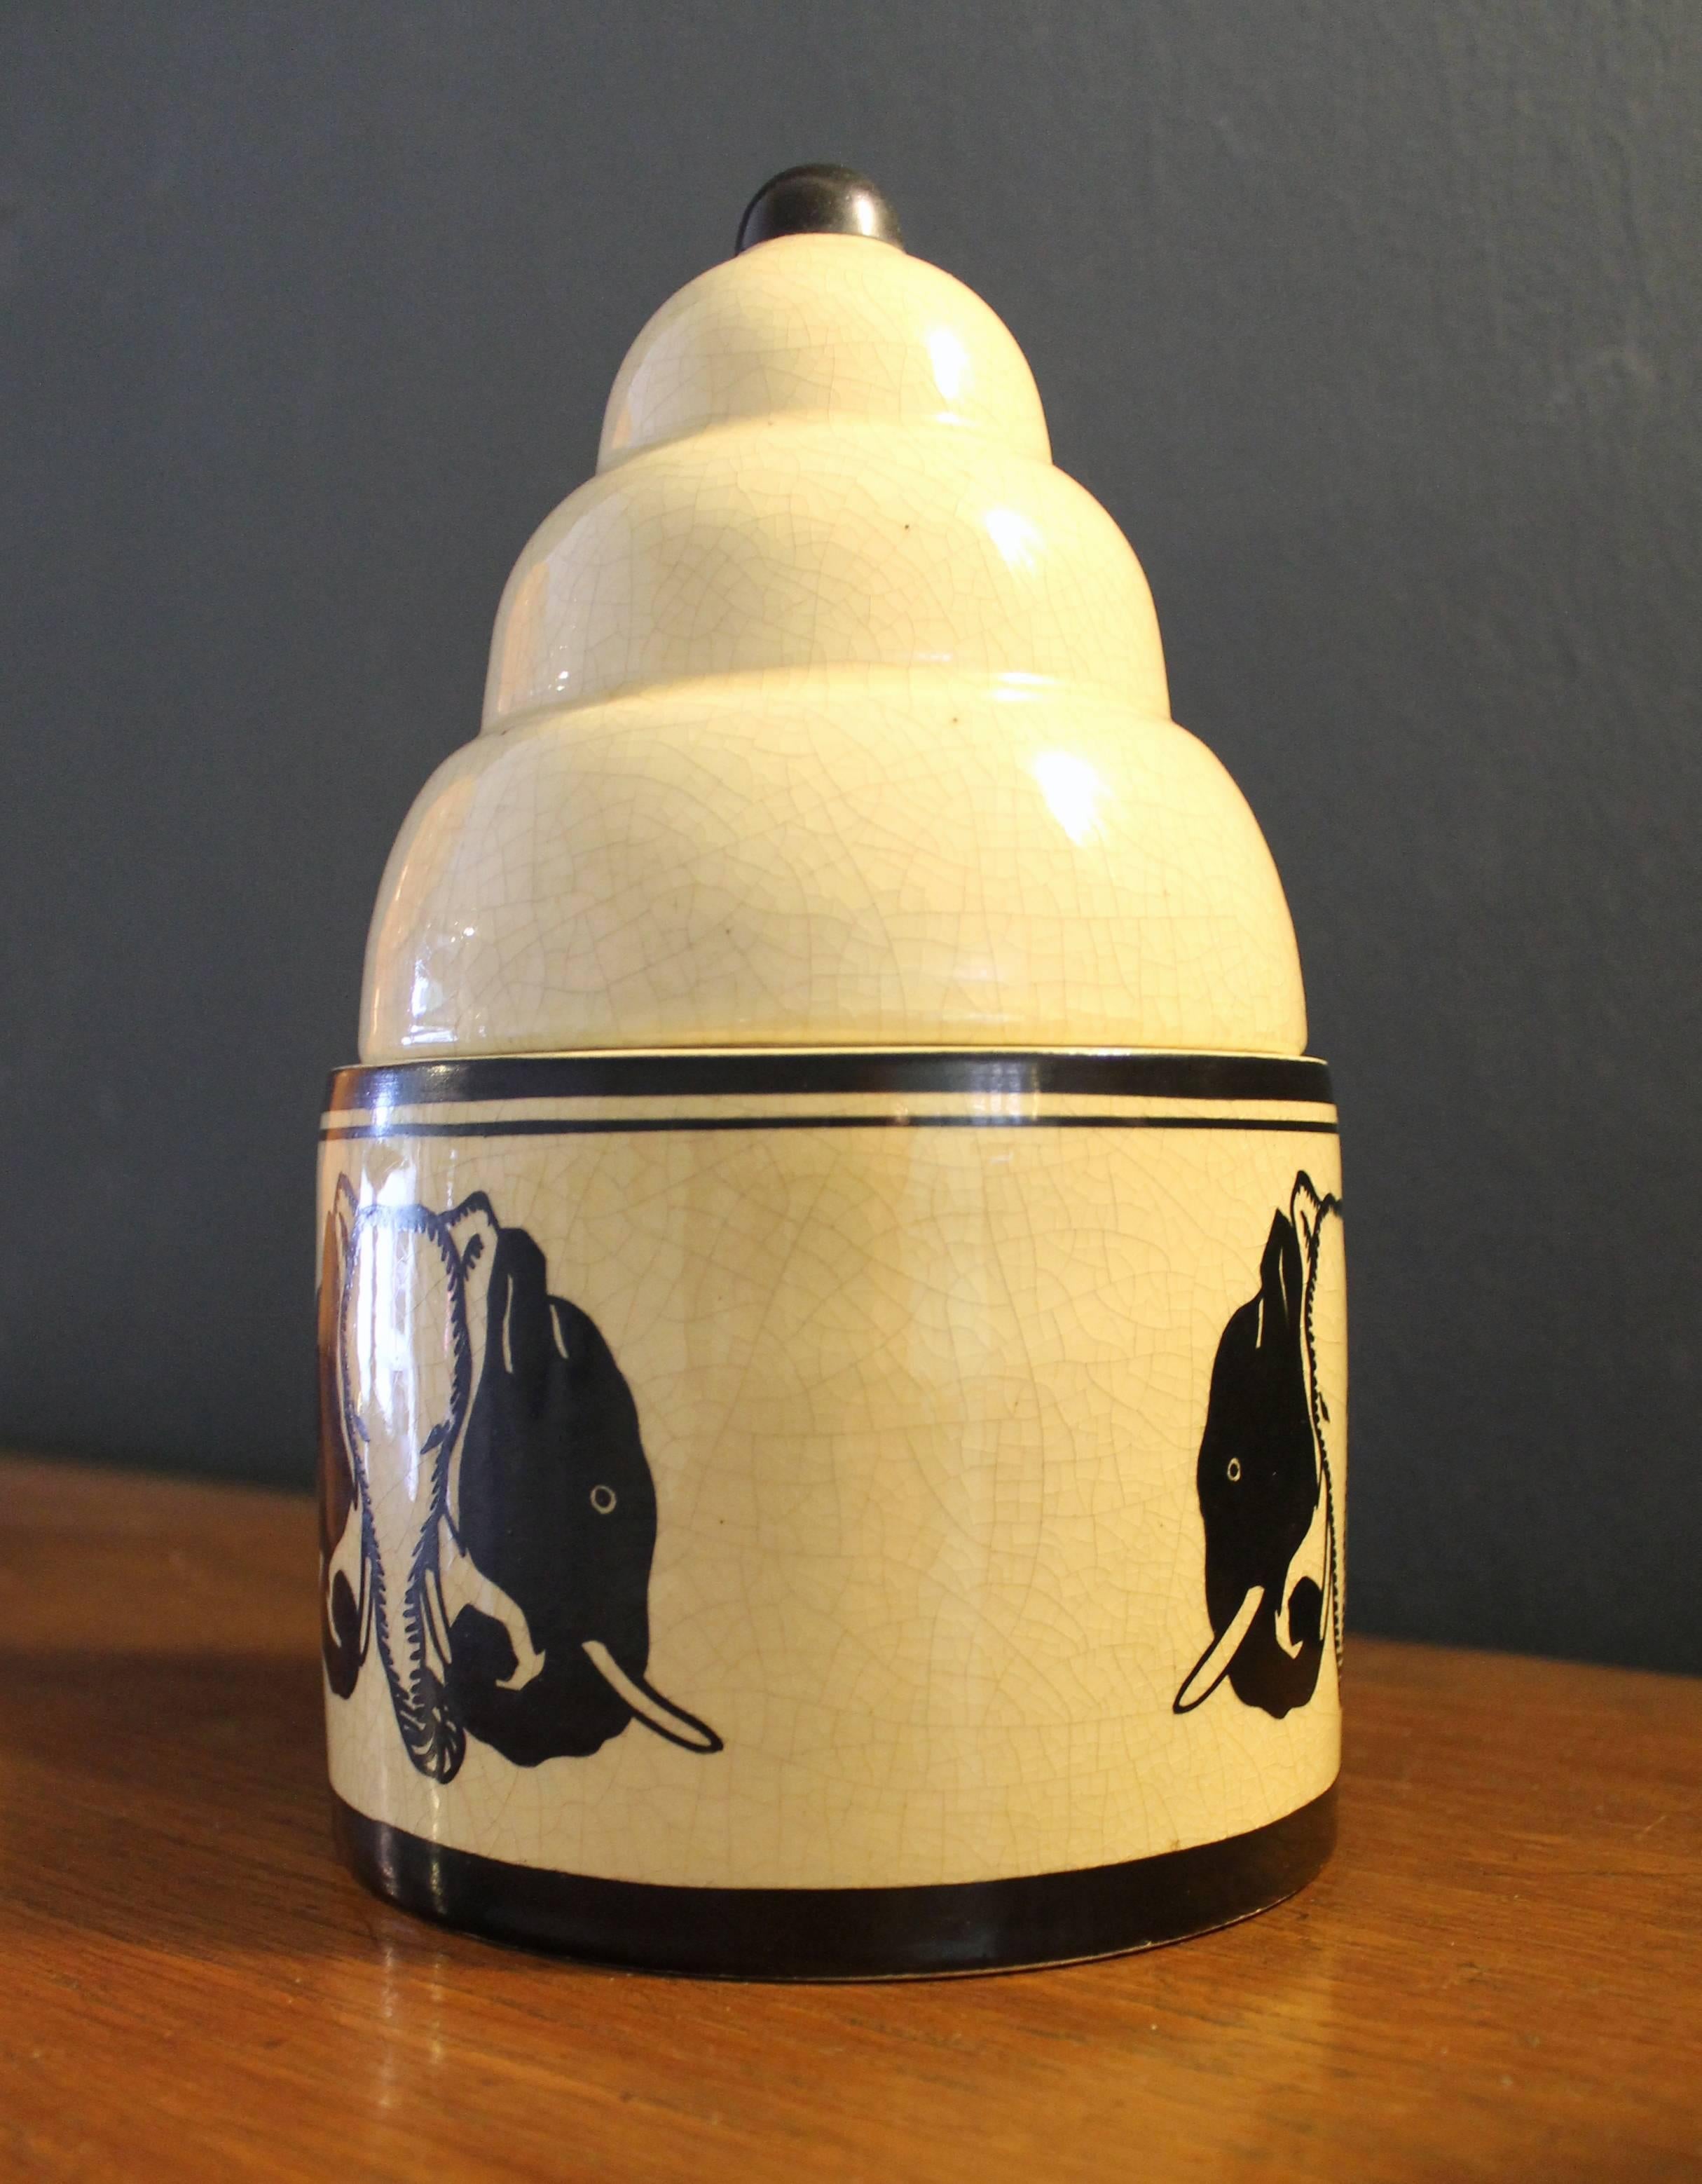 Keramikvase der Keramikfabrik Montiéres aus Amiens (Nordfrankreich), die nur eine sehr kurze Produktionsgeschichte hatte (1917/1933).
Diese Vase im Art déco-Stil gehört zur Serie Samara.